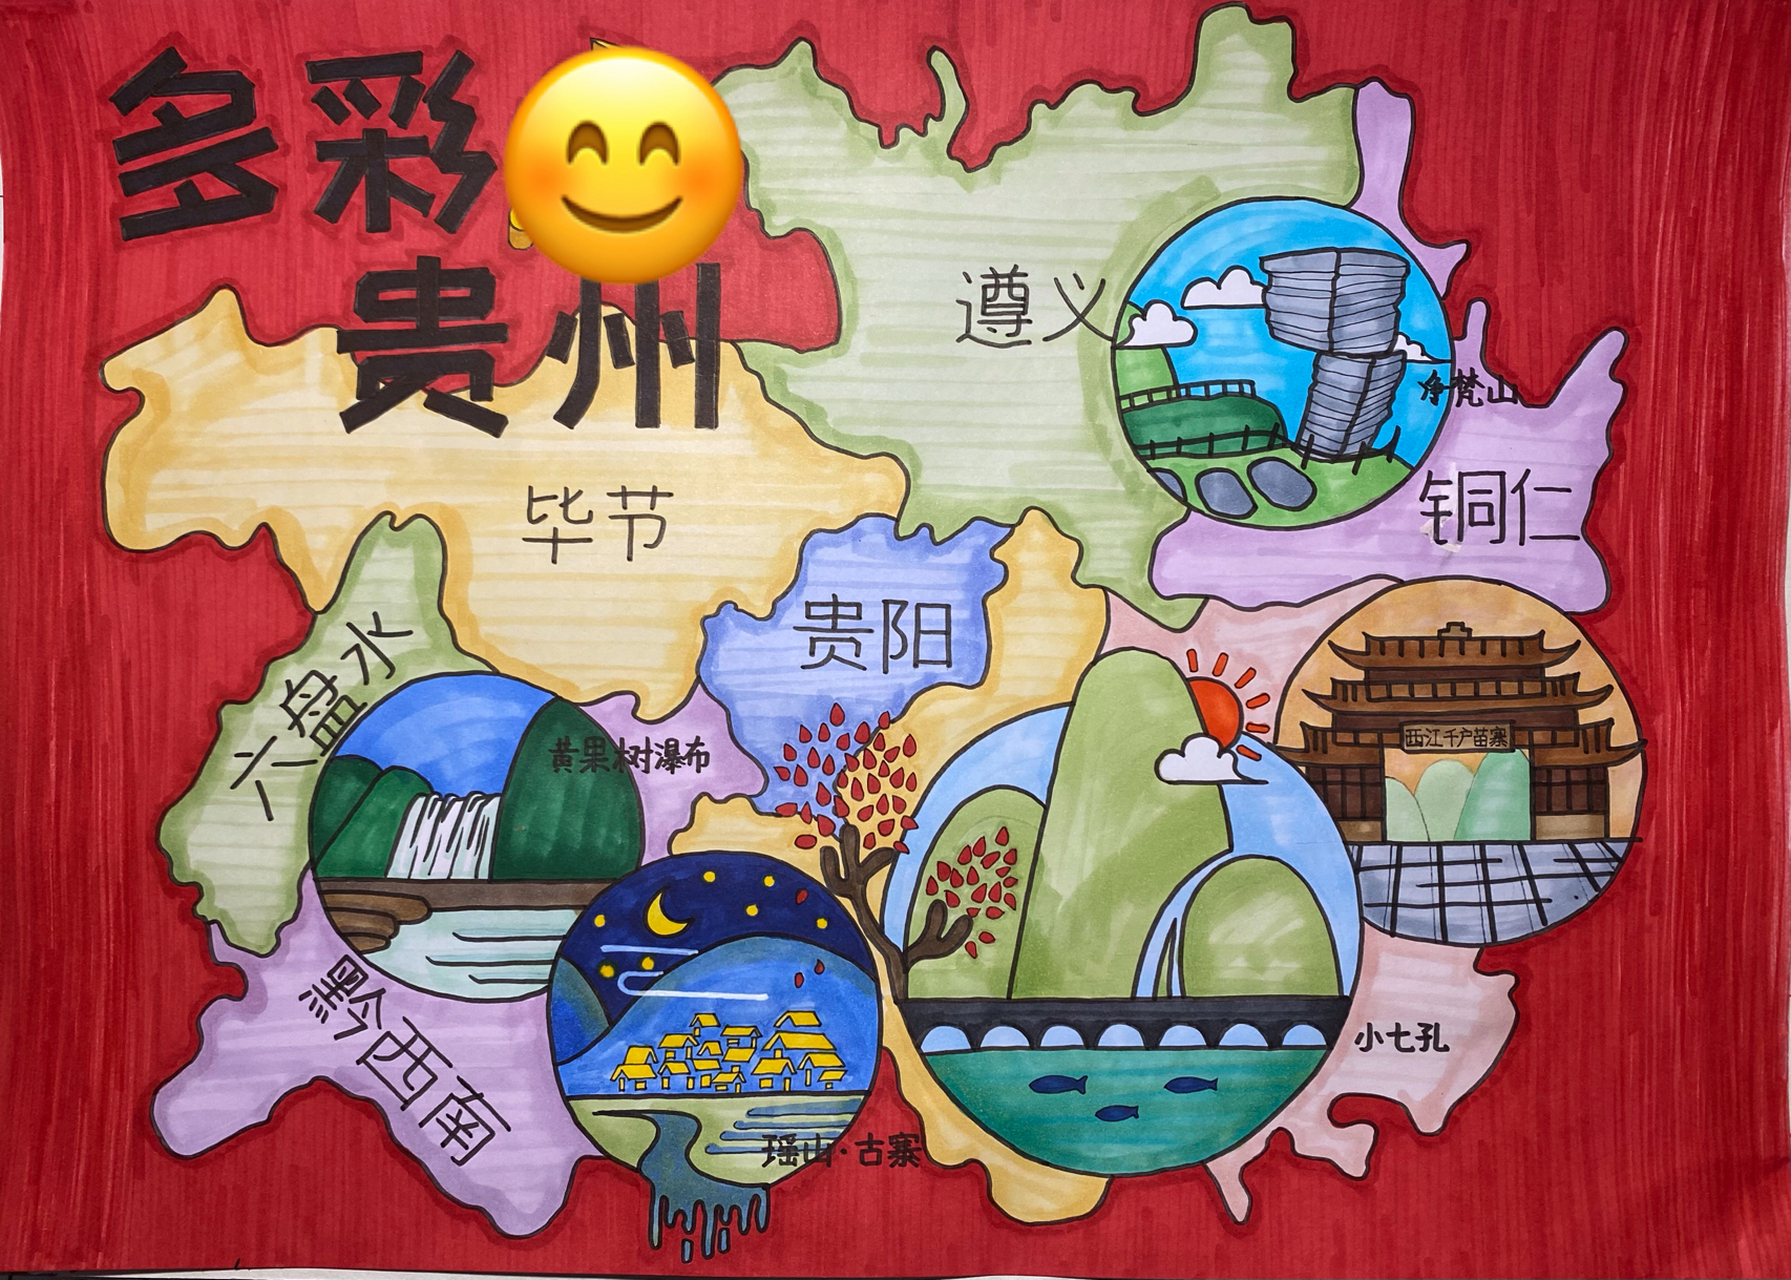 中国版图多彩贵州手绘地图儿童画 客稿,已投比赛,慎重参考,借鉴需改稿